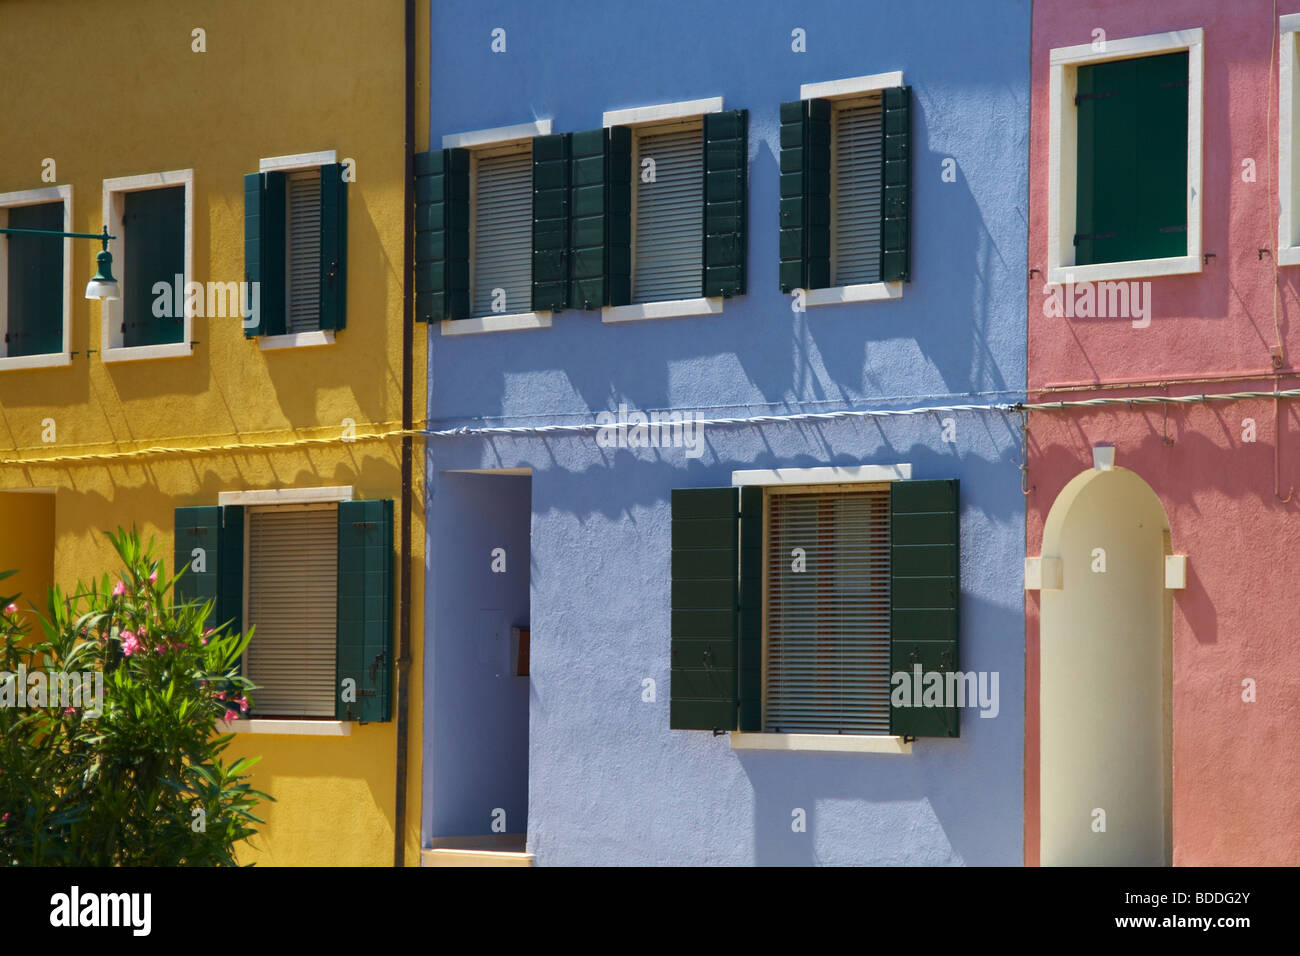 Casas de colores en la isla de Burano, Venecia Foto de stock